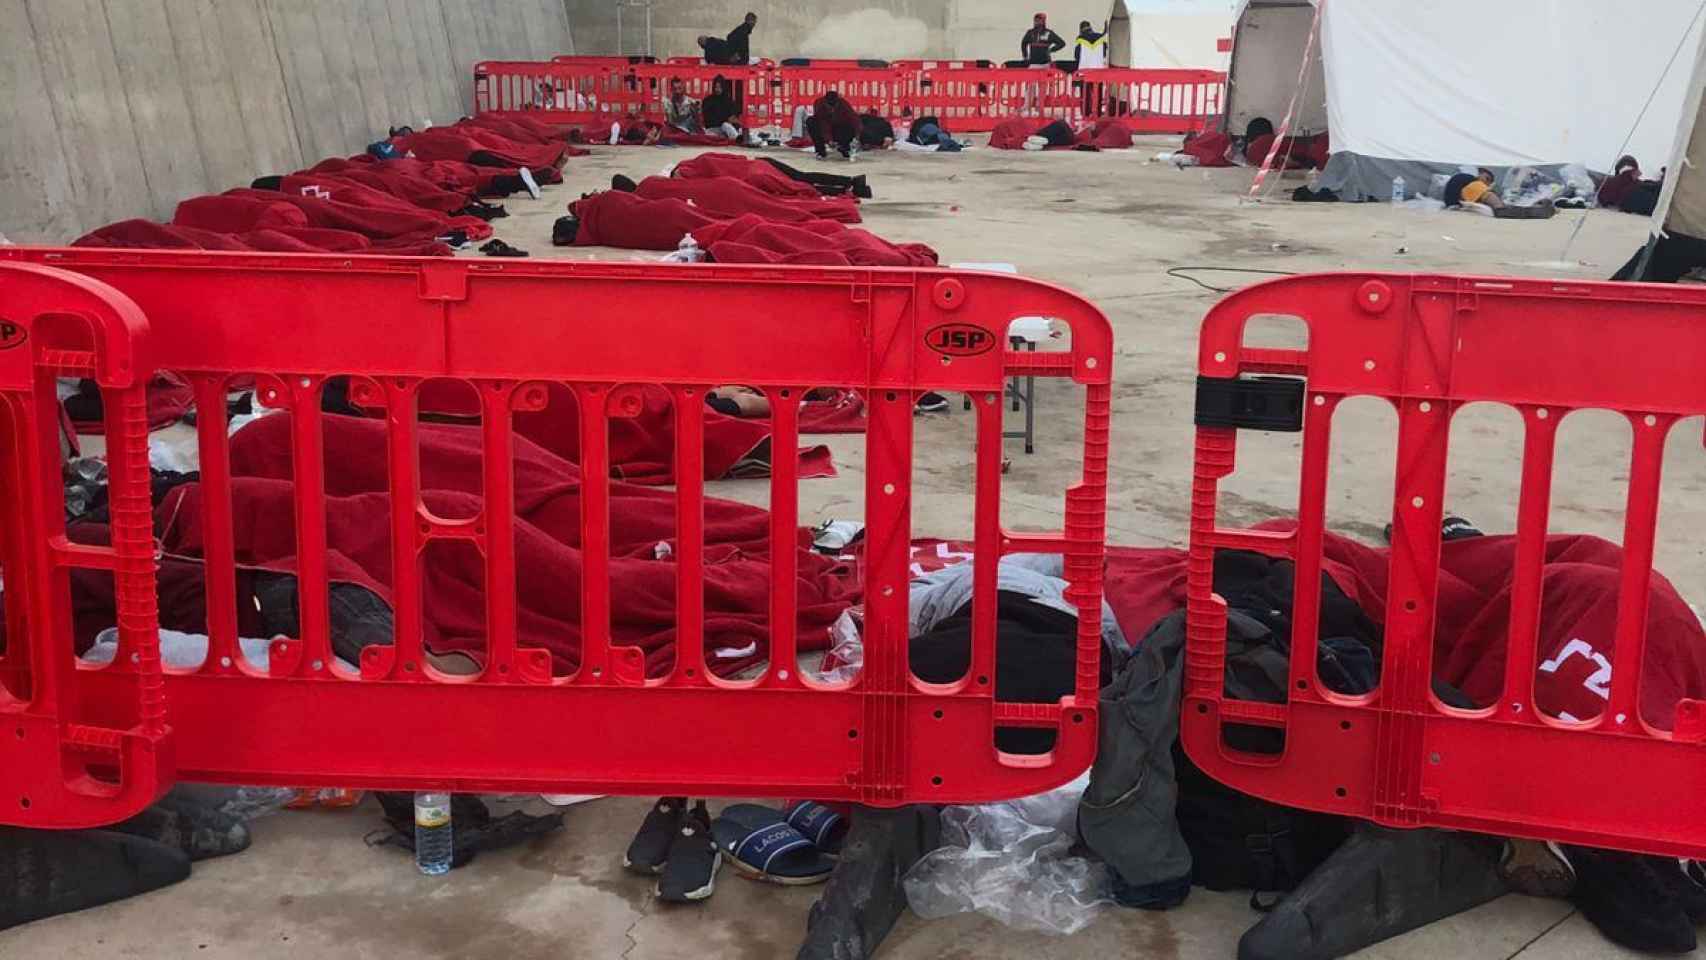 Decenas de inmigrantes argelinos durmiendo pegados en el suelo pese a los riesgos de contagios por Covid-19.